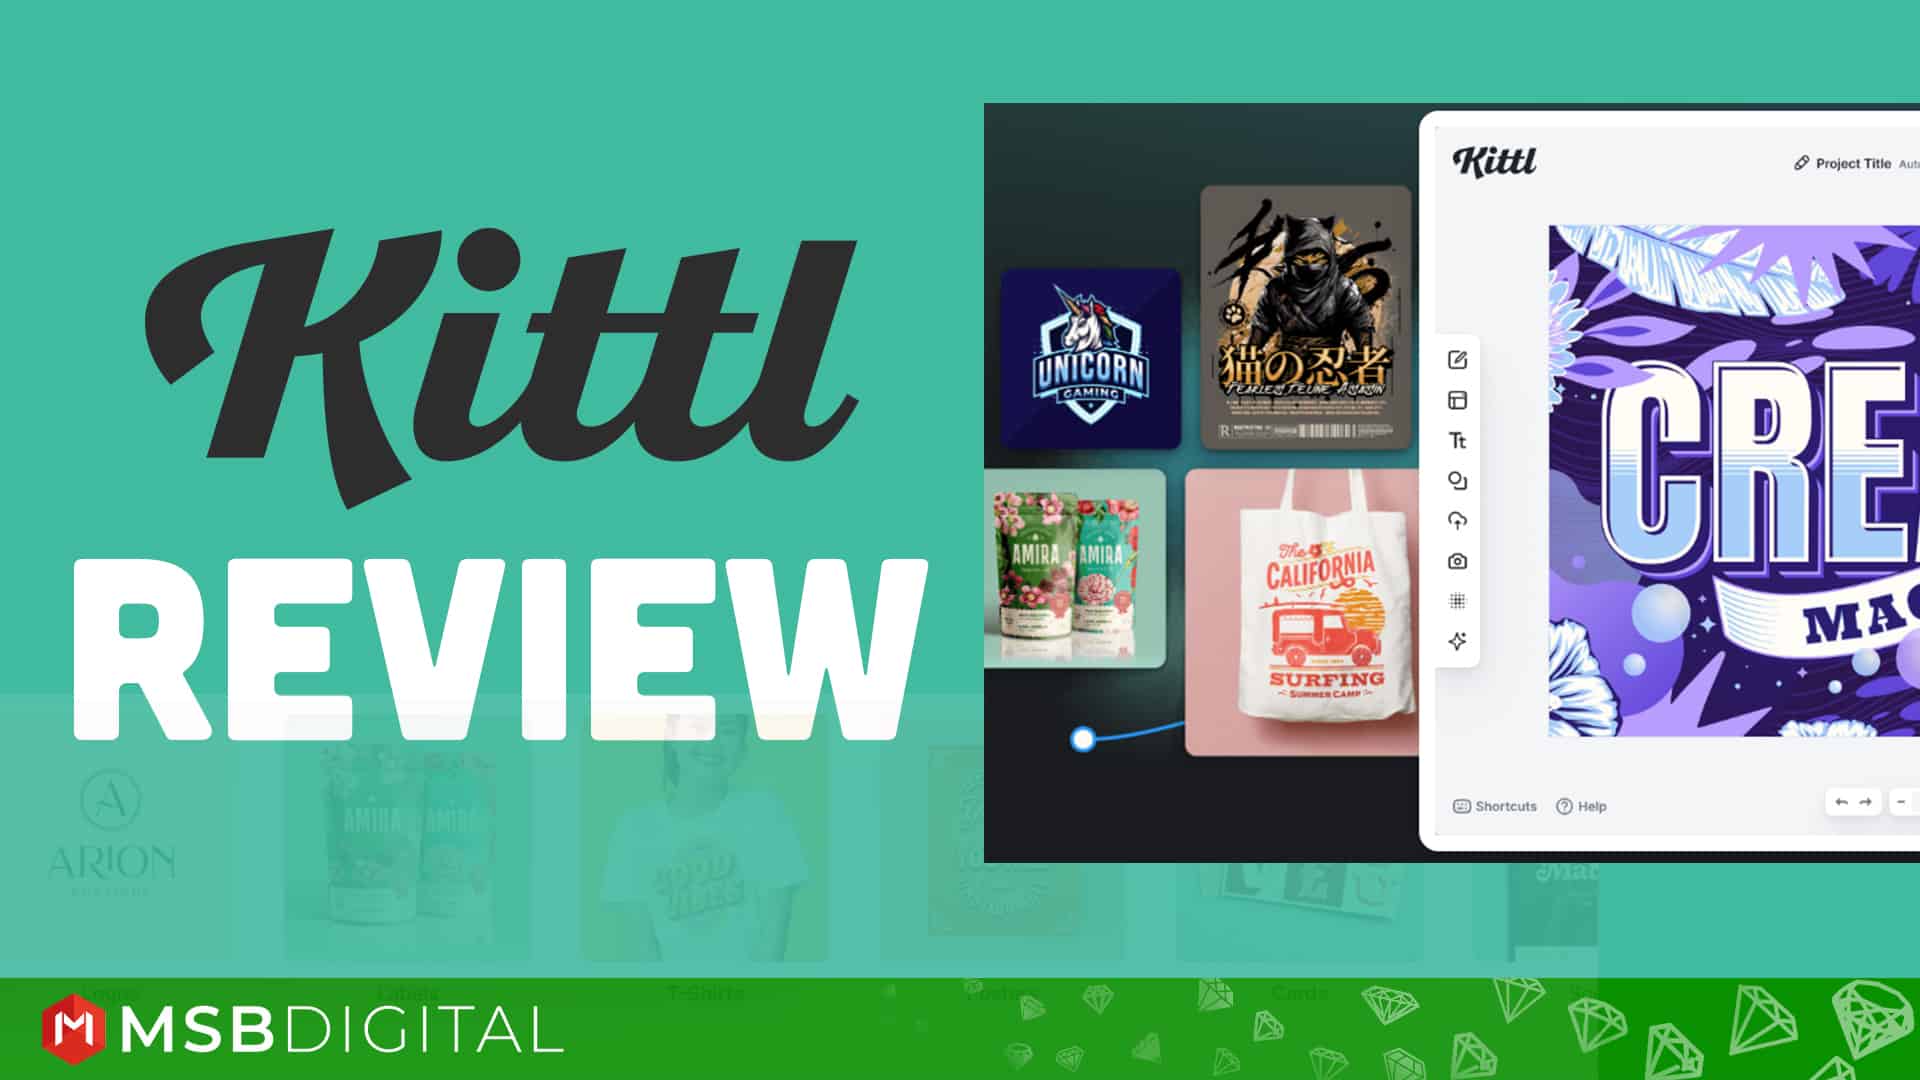 Kittl Review